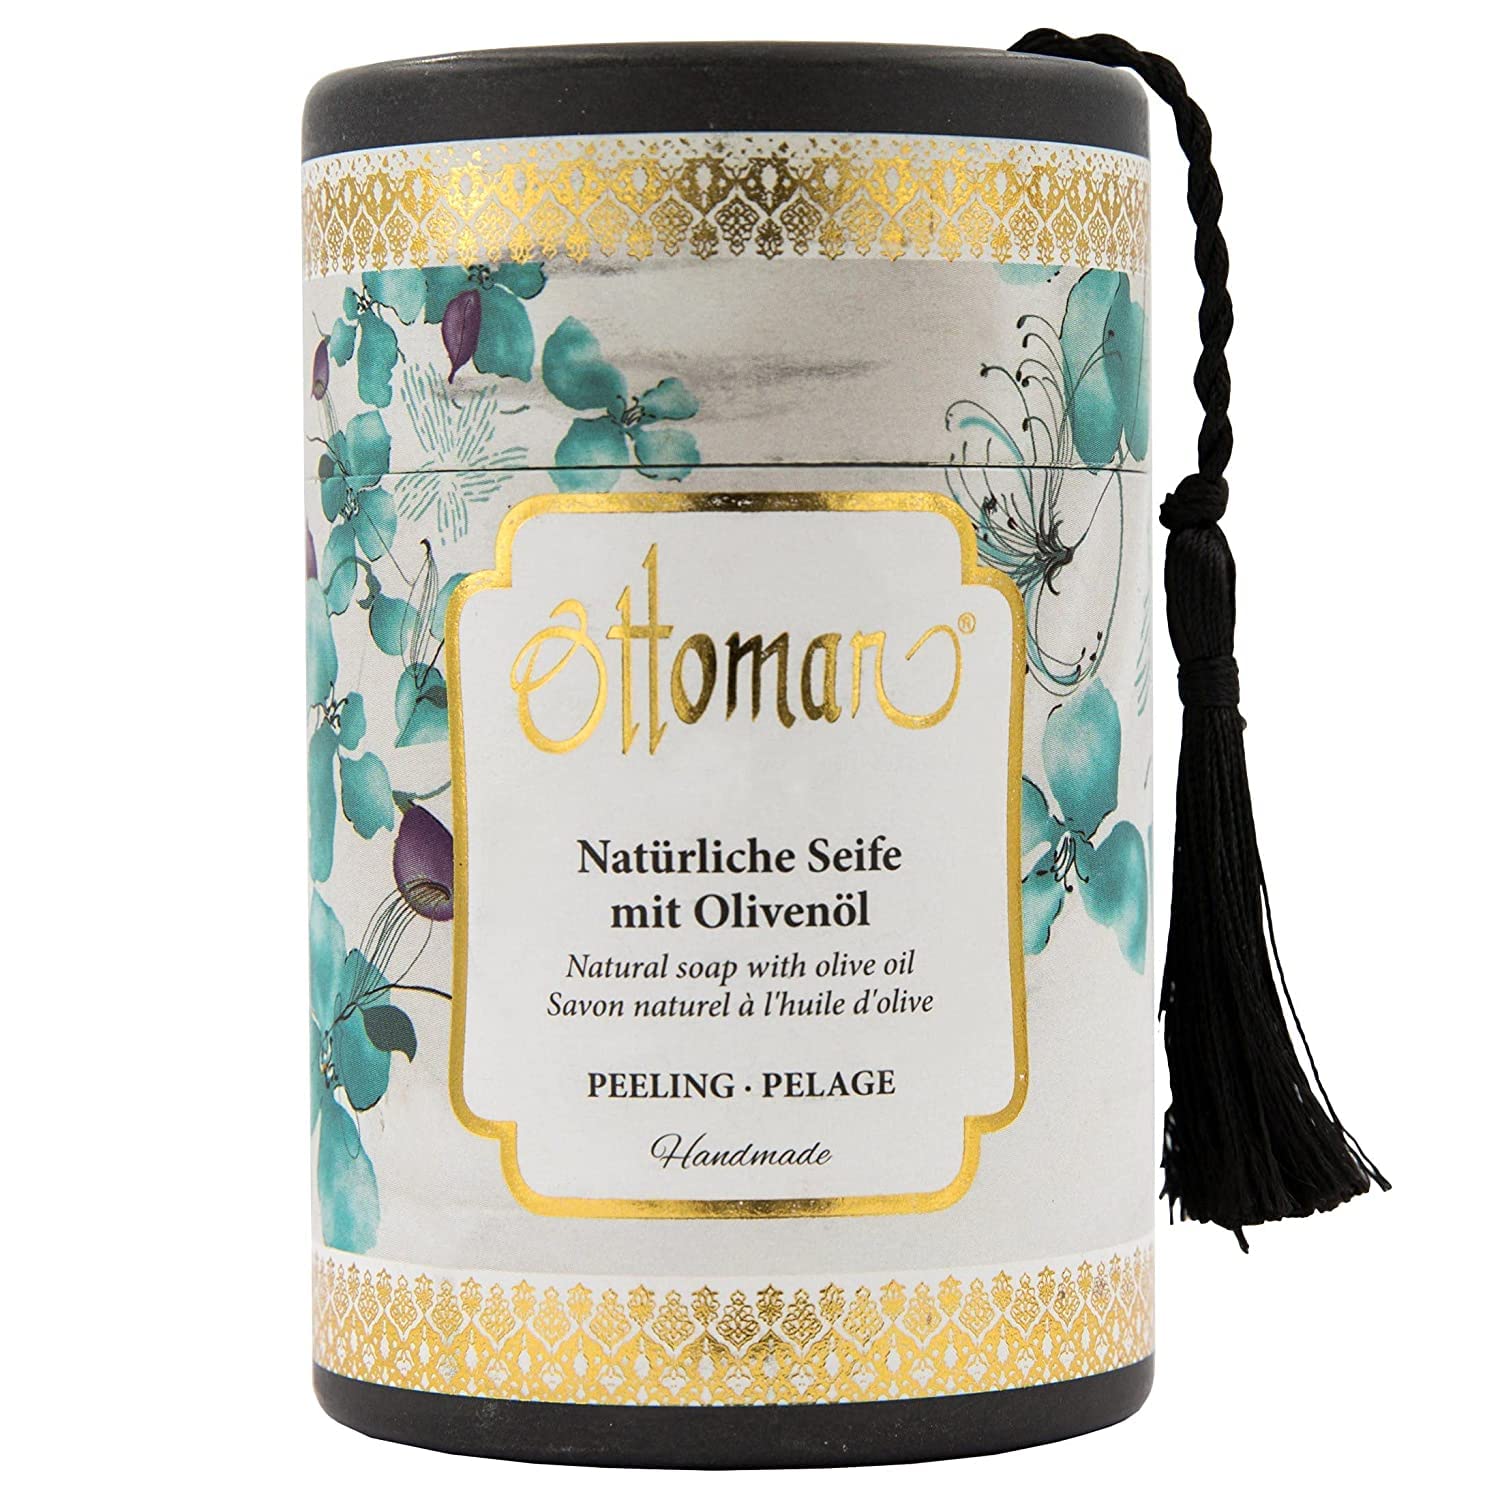 Ottoman Handgemachte Natürliche Seife mit Olivenöl im Zylinderbox - Peeling - 2 Stück a 75 gr.